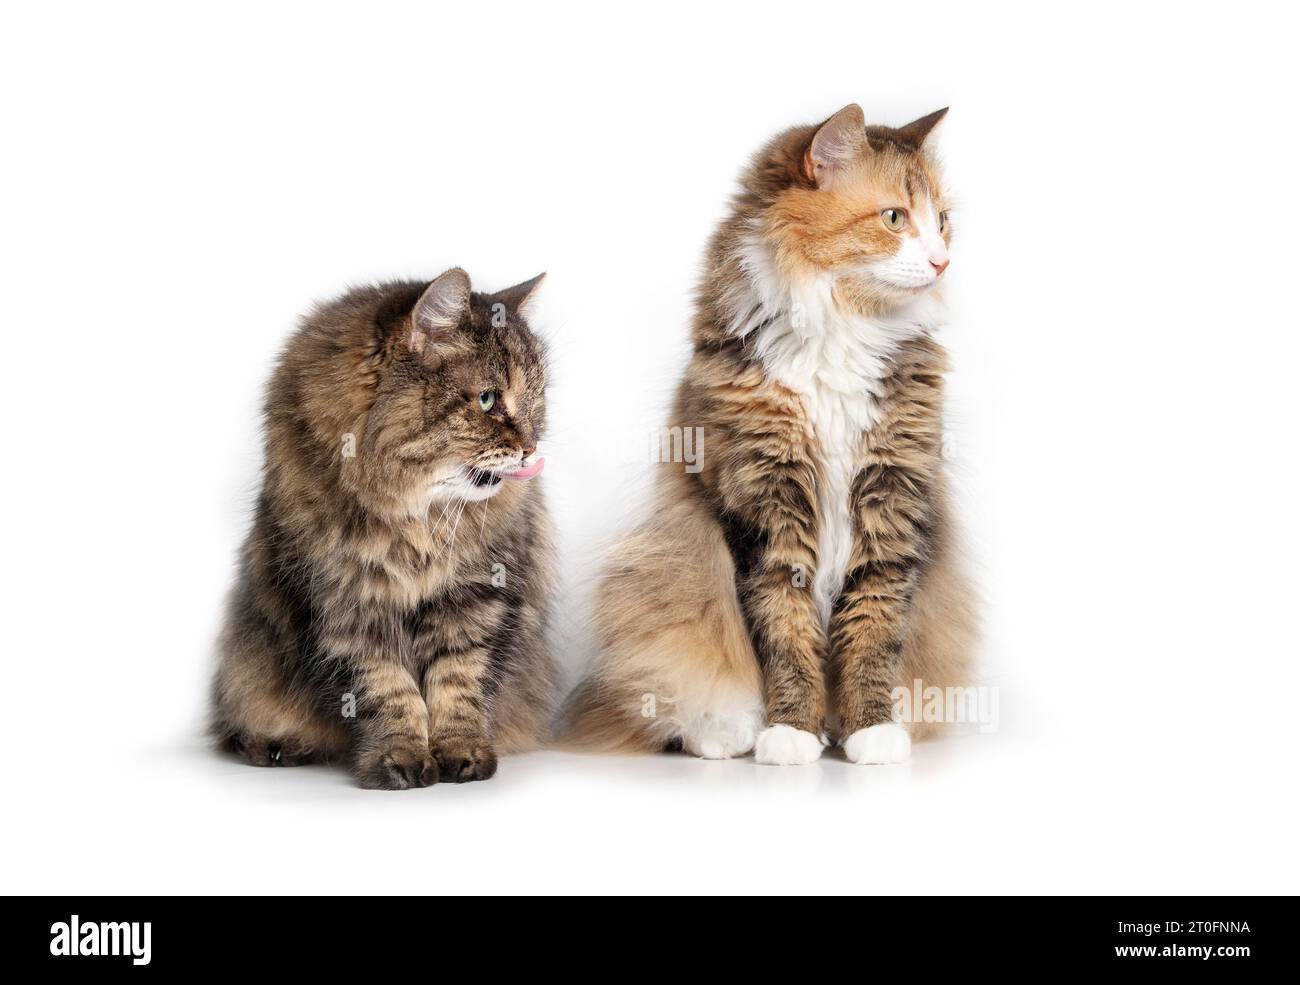 Neugierige Katzen, die im Sitzen auf einen Bildschirm schauen. Zwei gebundene, flauschige Katzen sitzen zusammen in Begleitung. 17 Jahre alte Tabby Katze und Stockfoto